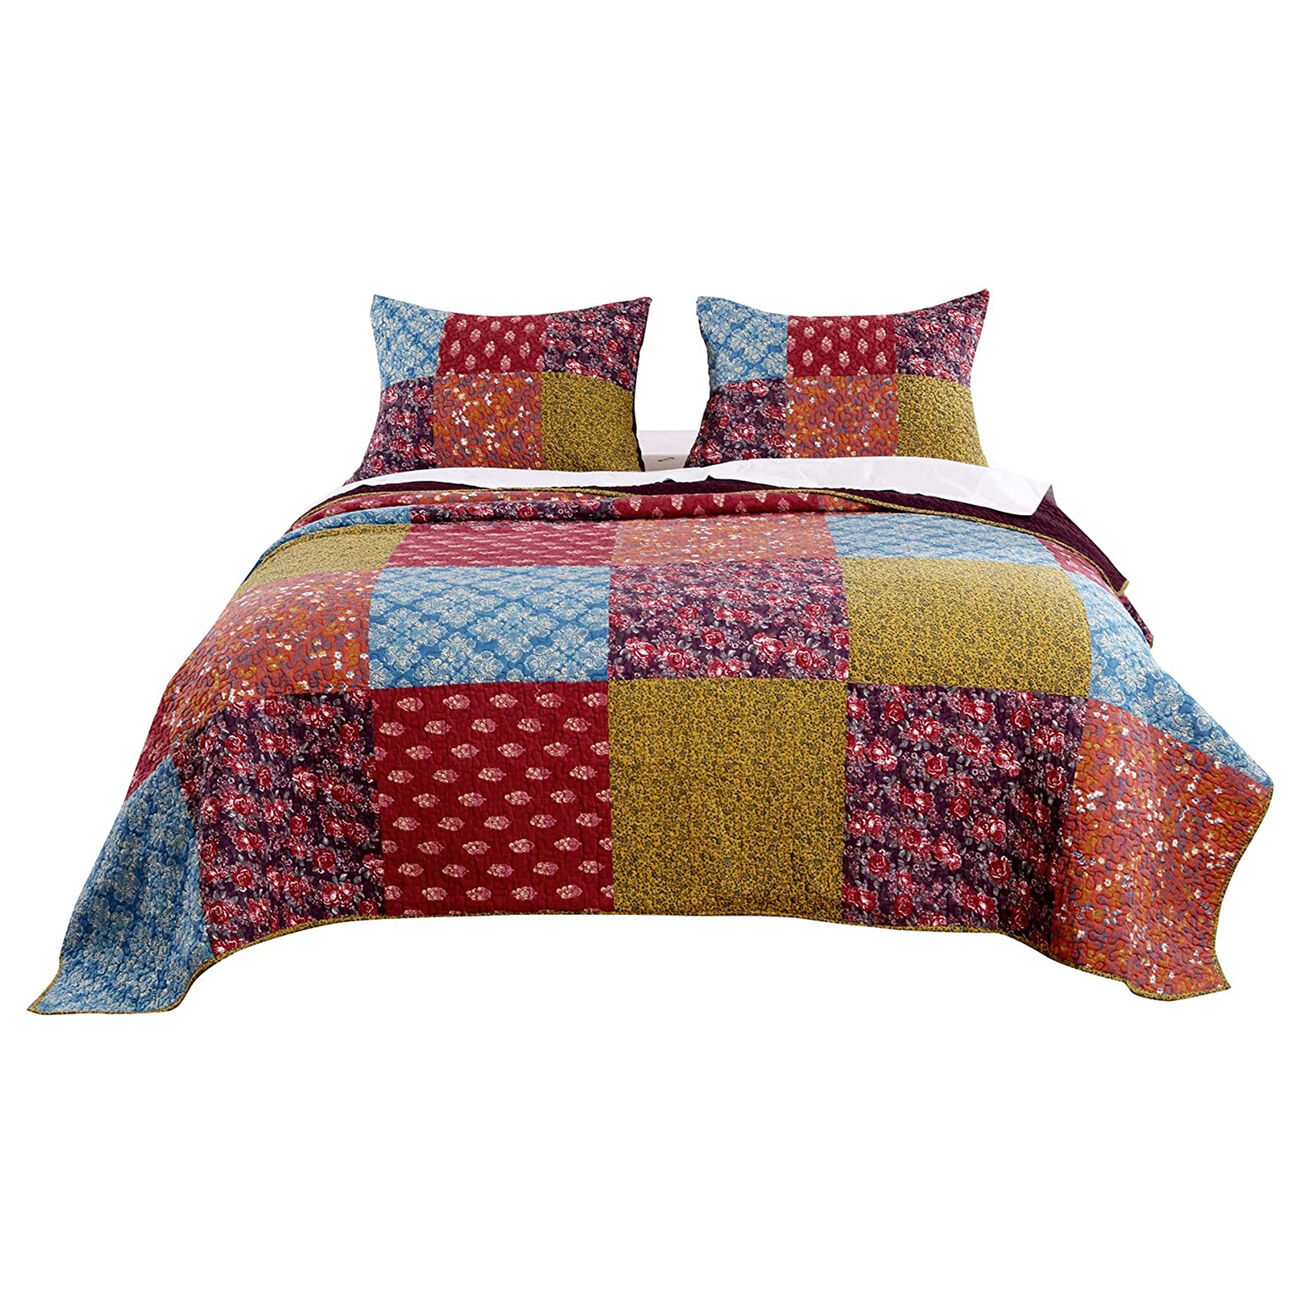 3 Piece Cotton King Size Quilt Set with Patchwork, Multicolor - BM223405